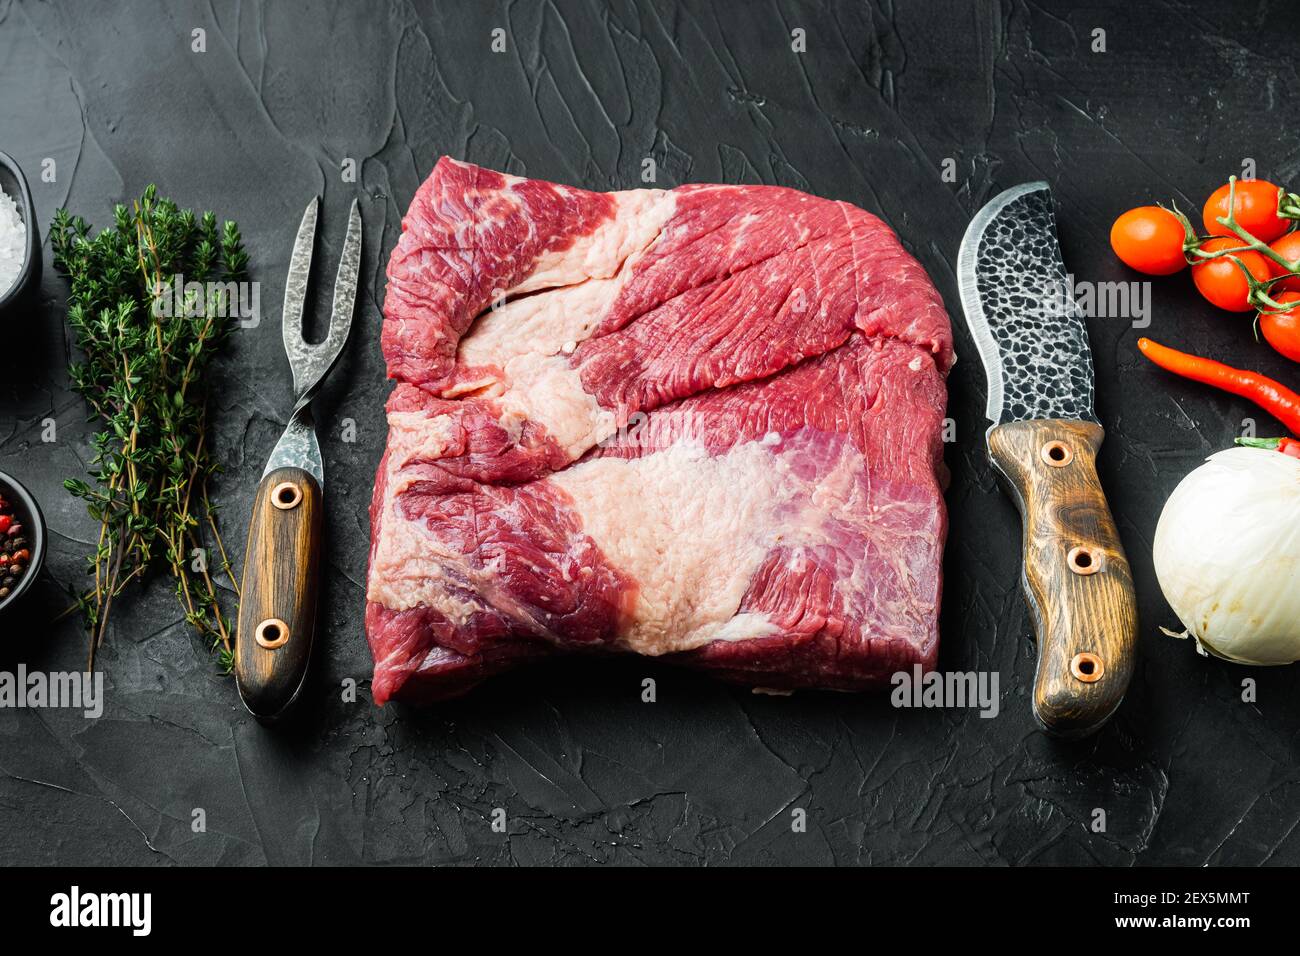 Roh Kalb Brisket Rindfleisch Set, mit Zutaten für das Rauchen machen Grill, Pastrami, Heilung, auf schwarzem Stein Hintergrund Stockfoto